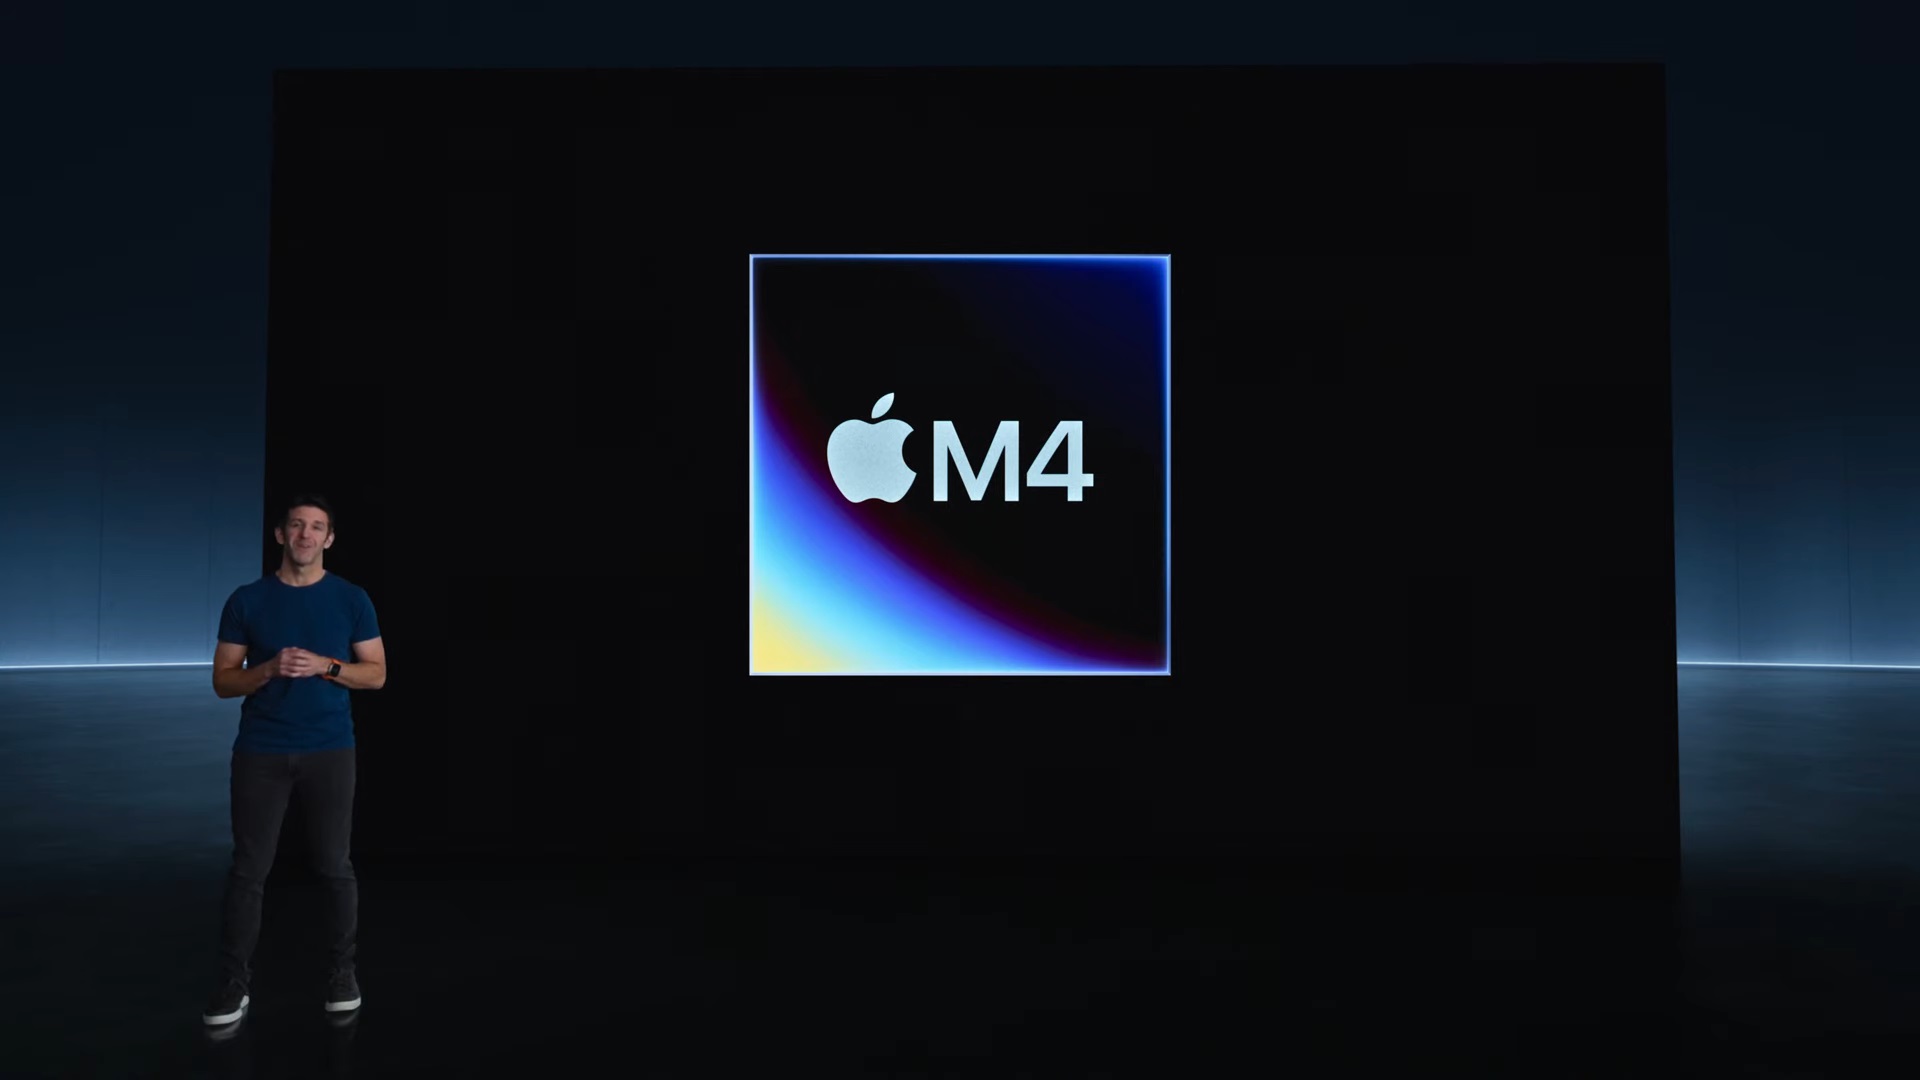 اپل تراشه جدید M4 را معرفی کرد.